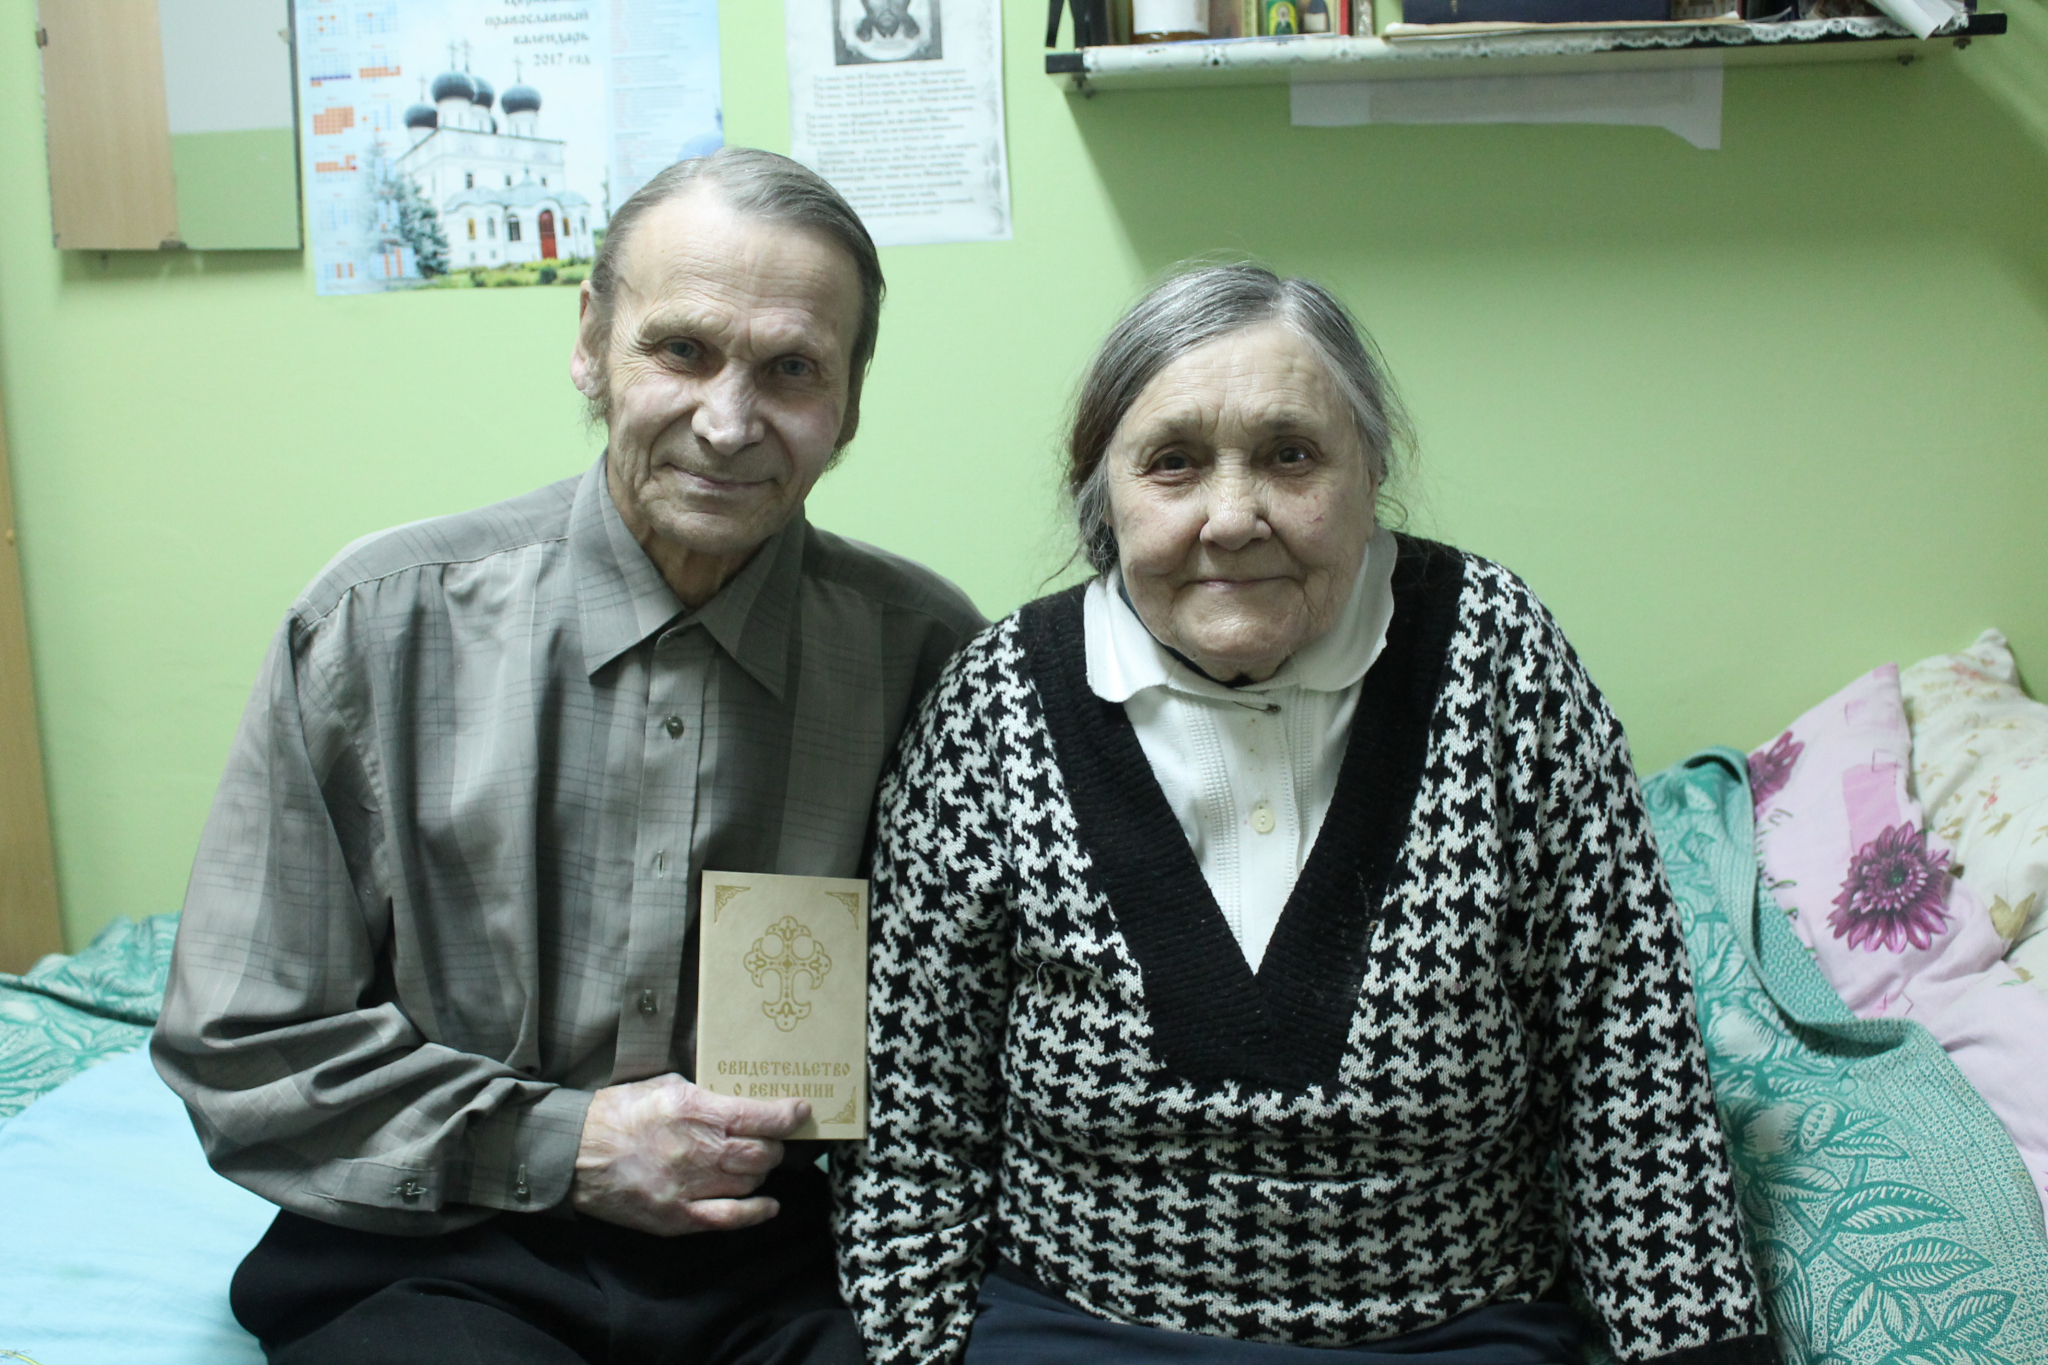 Cупруги встретились в чепецком доме-интернате спустя 40 лет